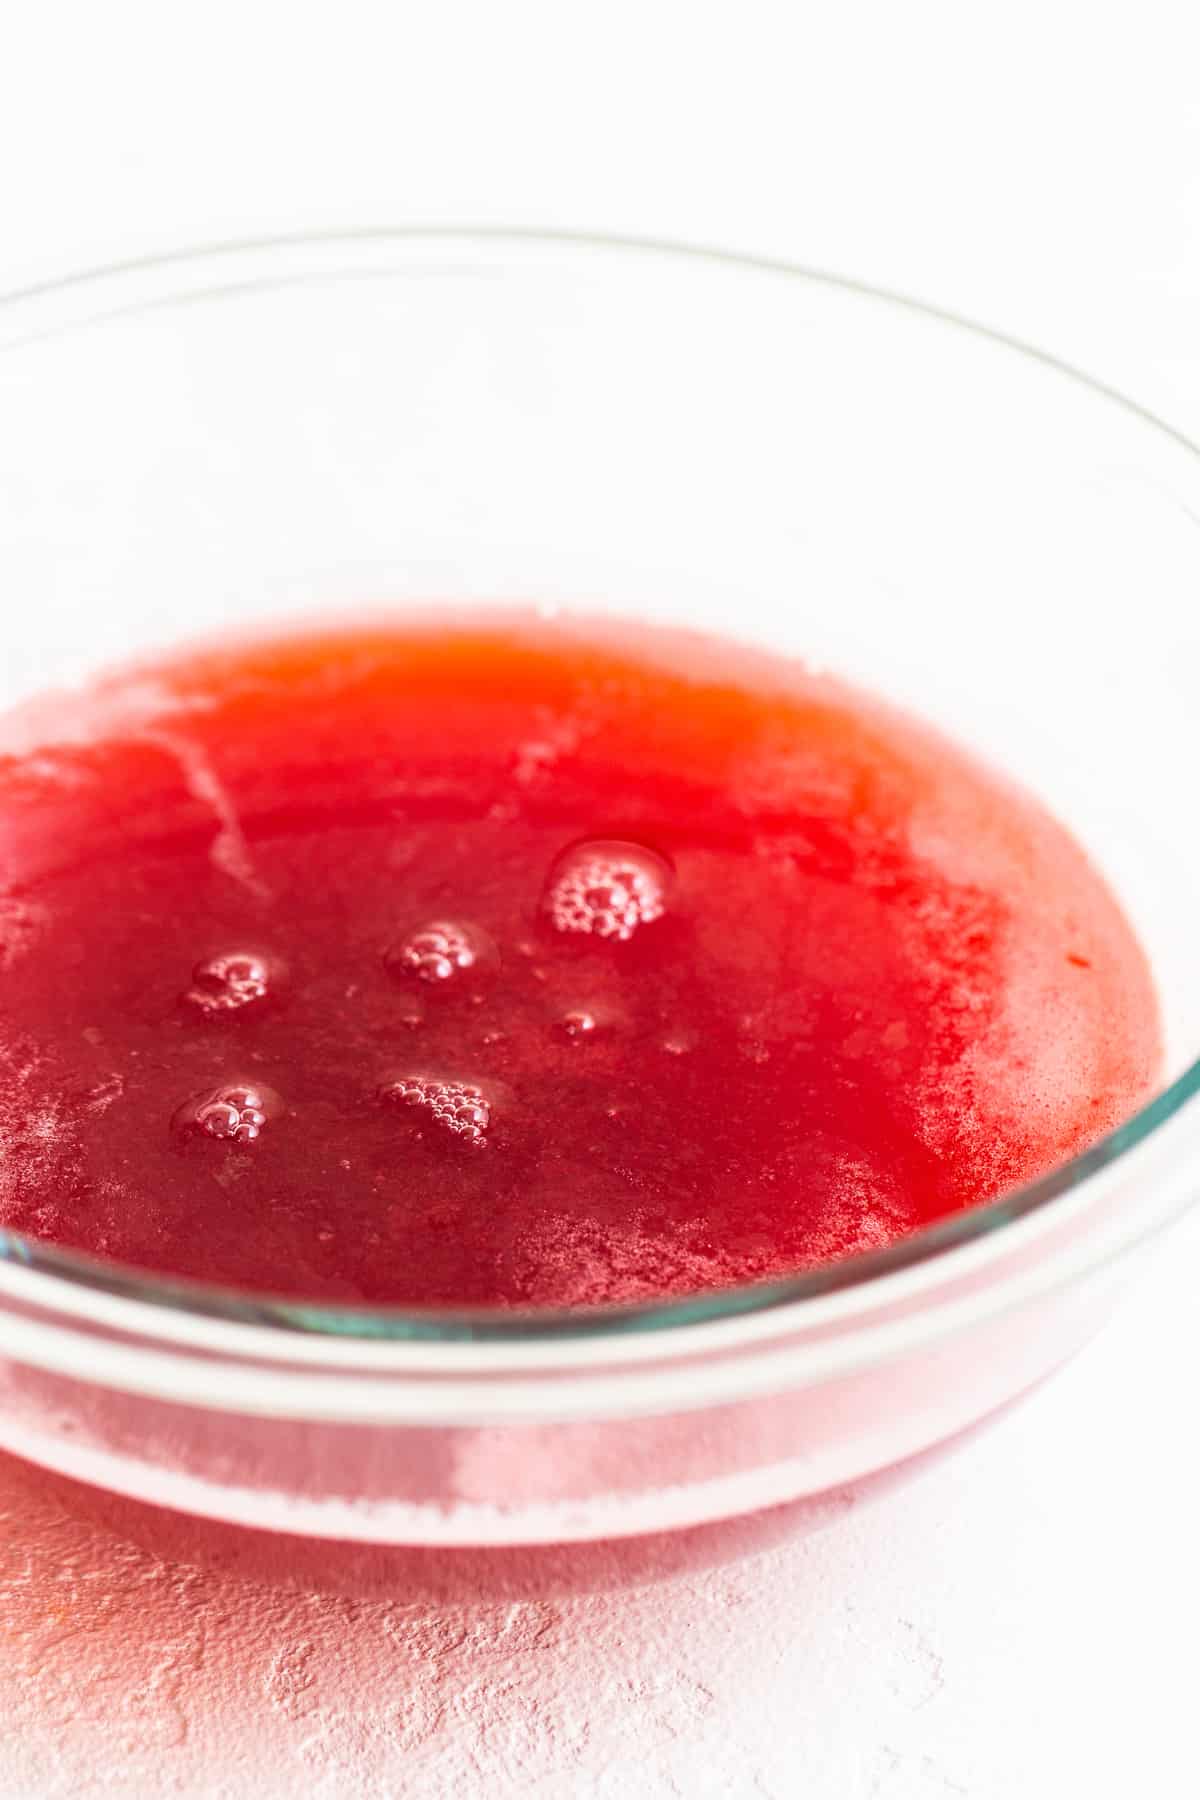 honey raspberry juice in bowl.